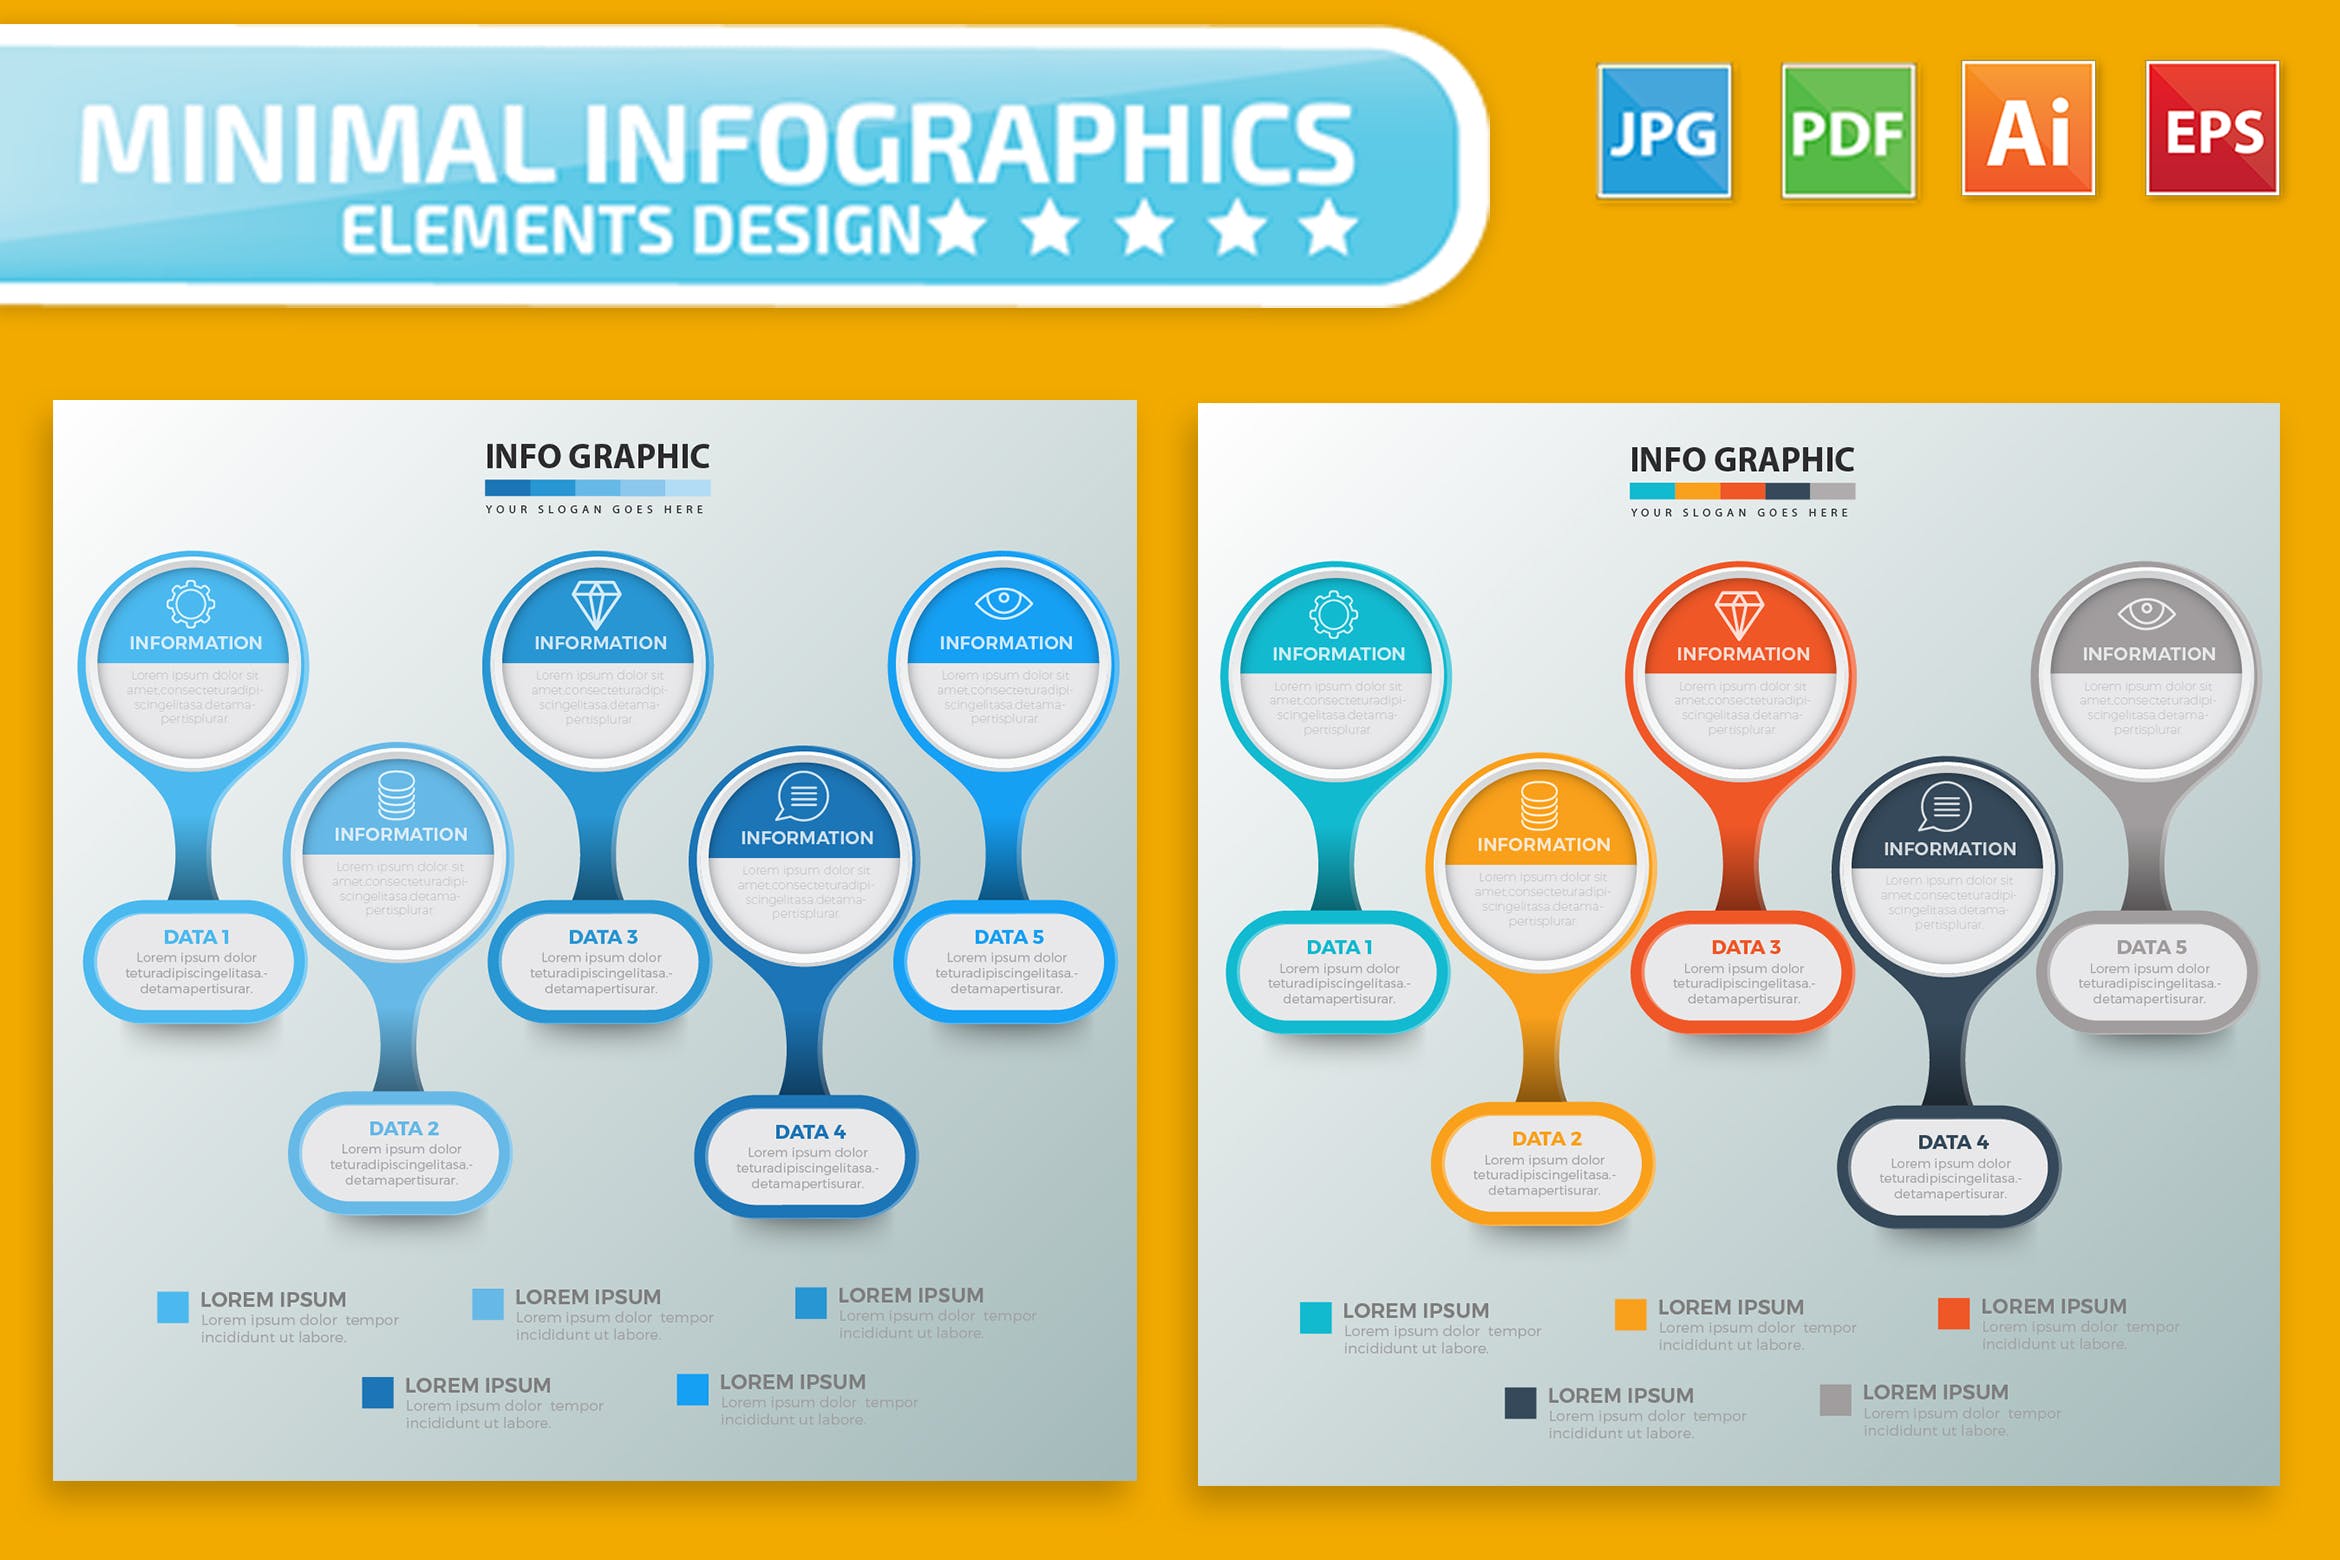 要点说明/重要特征信息图表矢量图形大洋岛精选素材v2 Infographic Elements Design插图